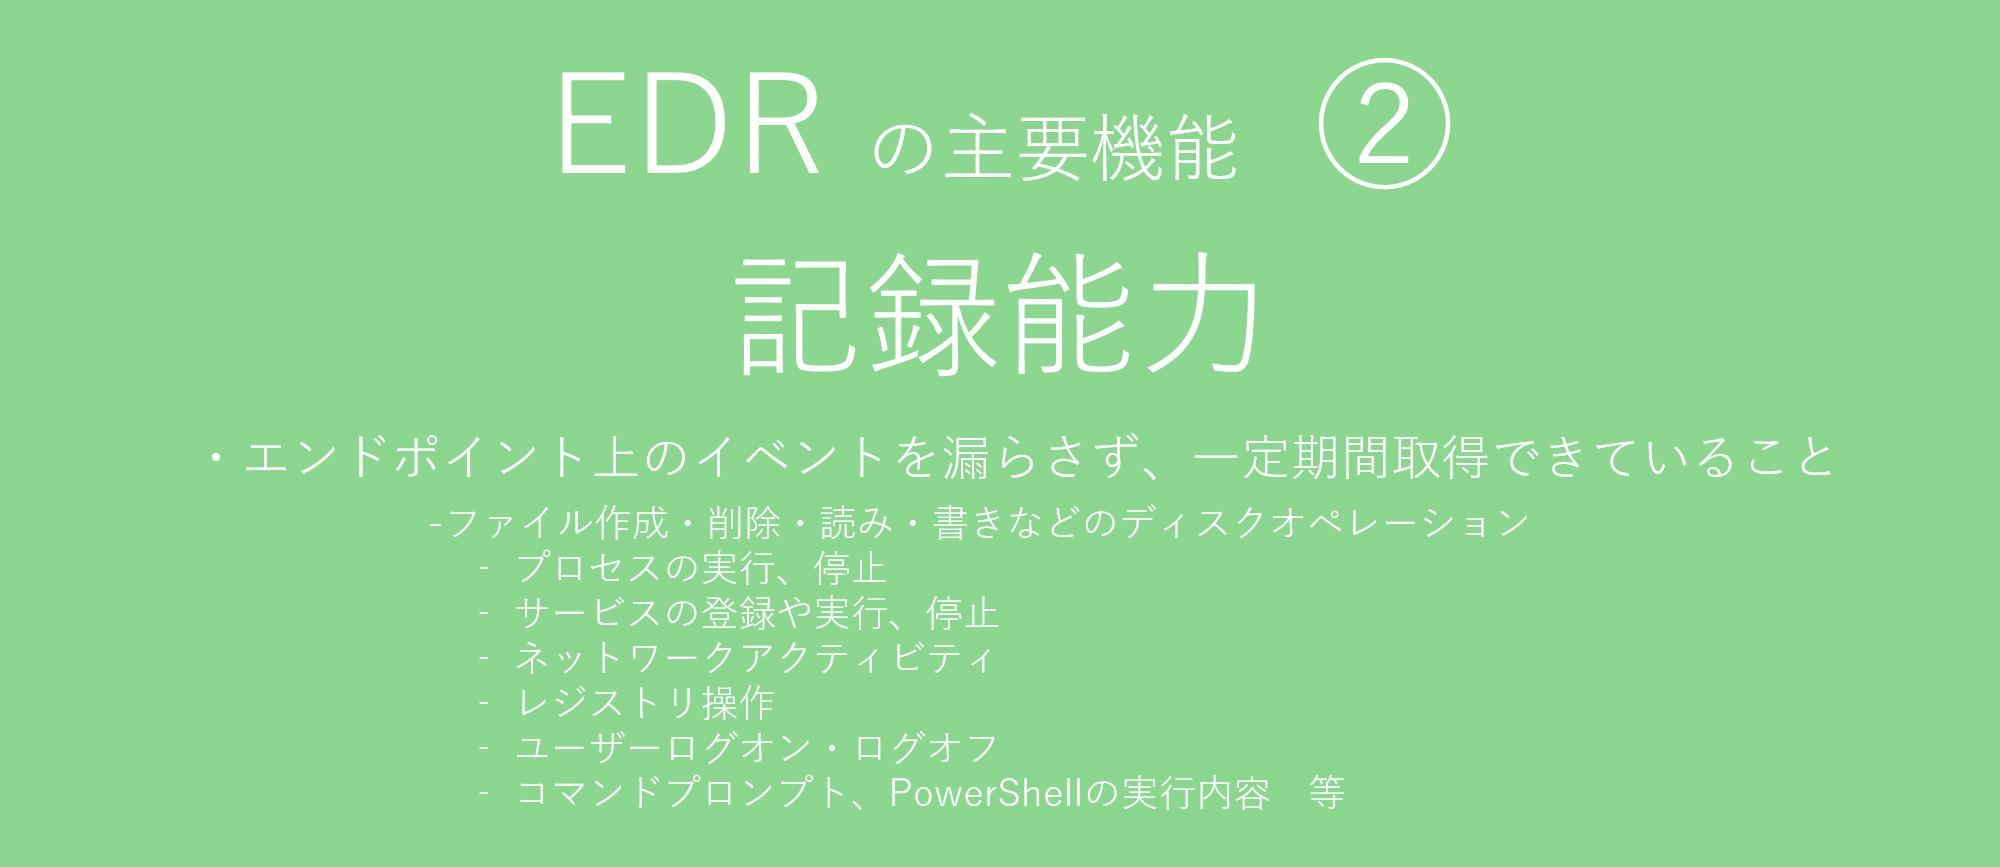 EDR2a